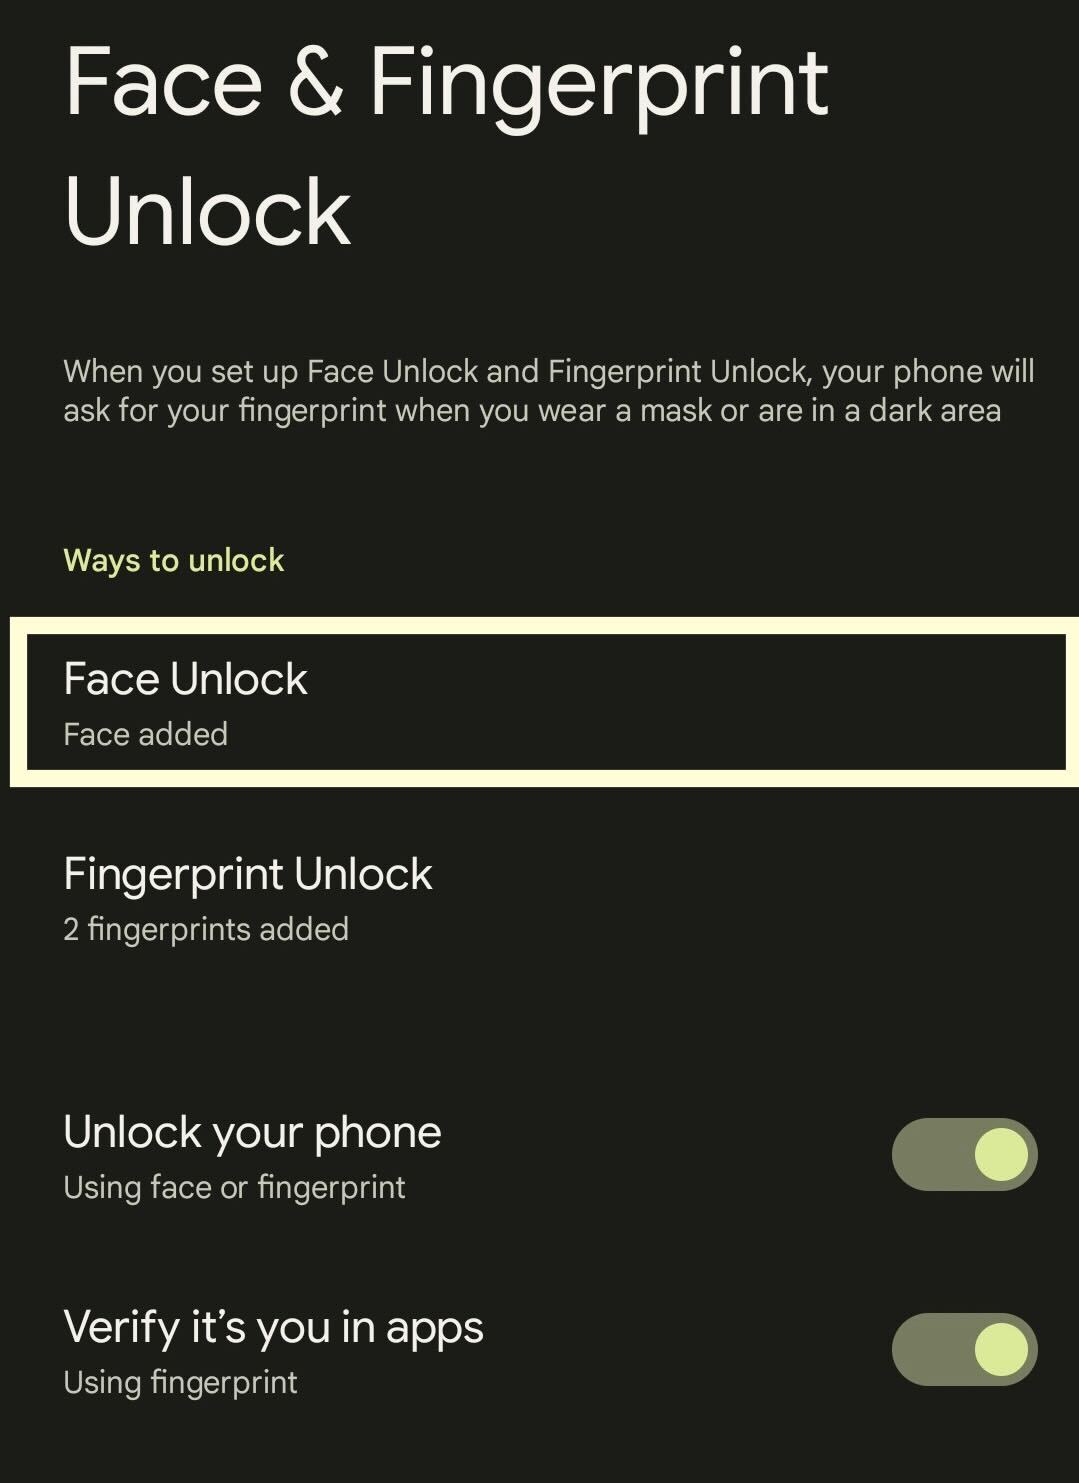 Klicken Sie auf Face Unlock